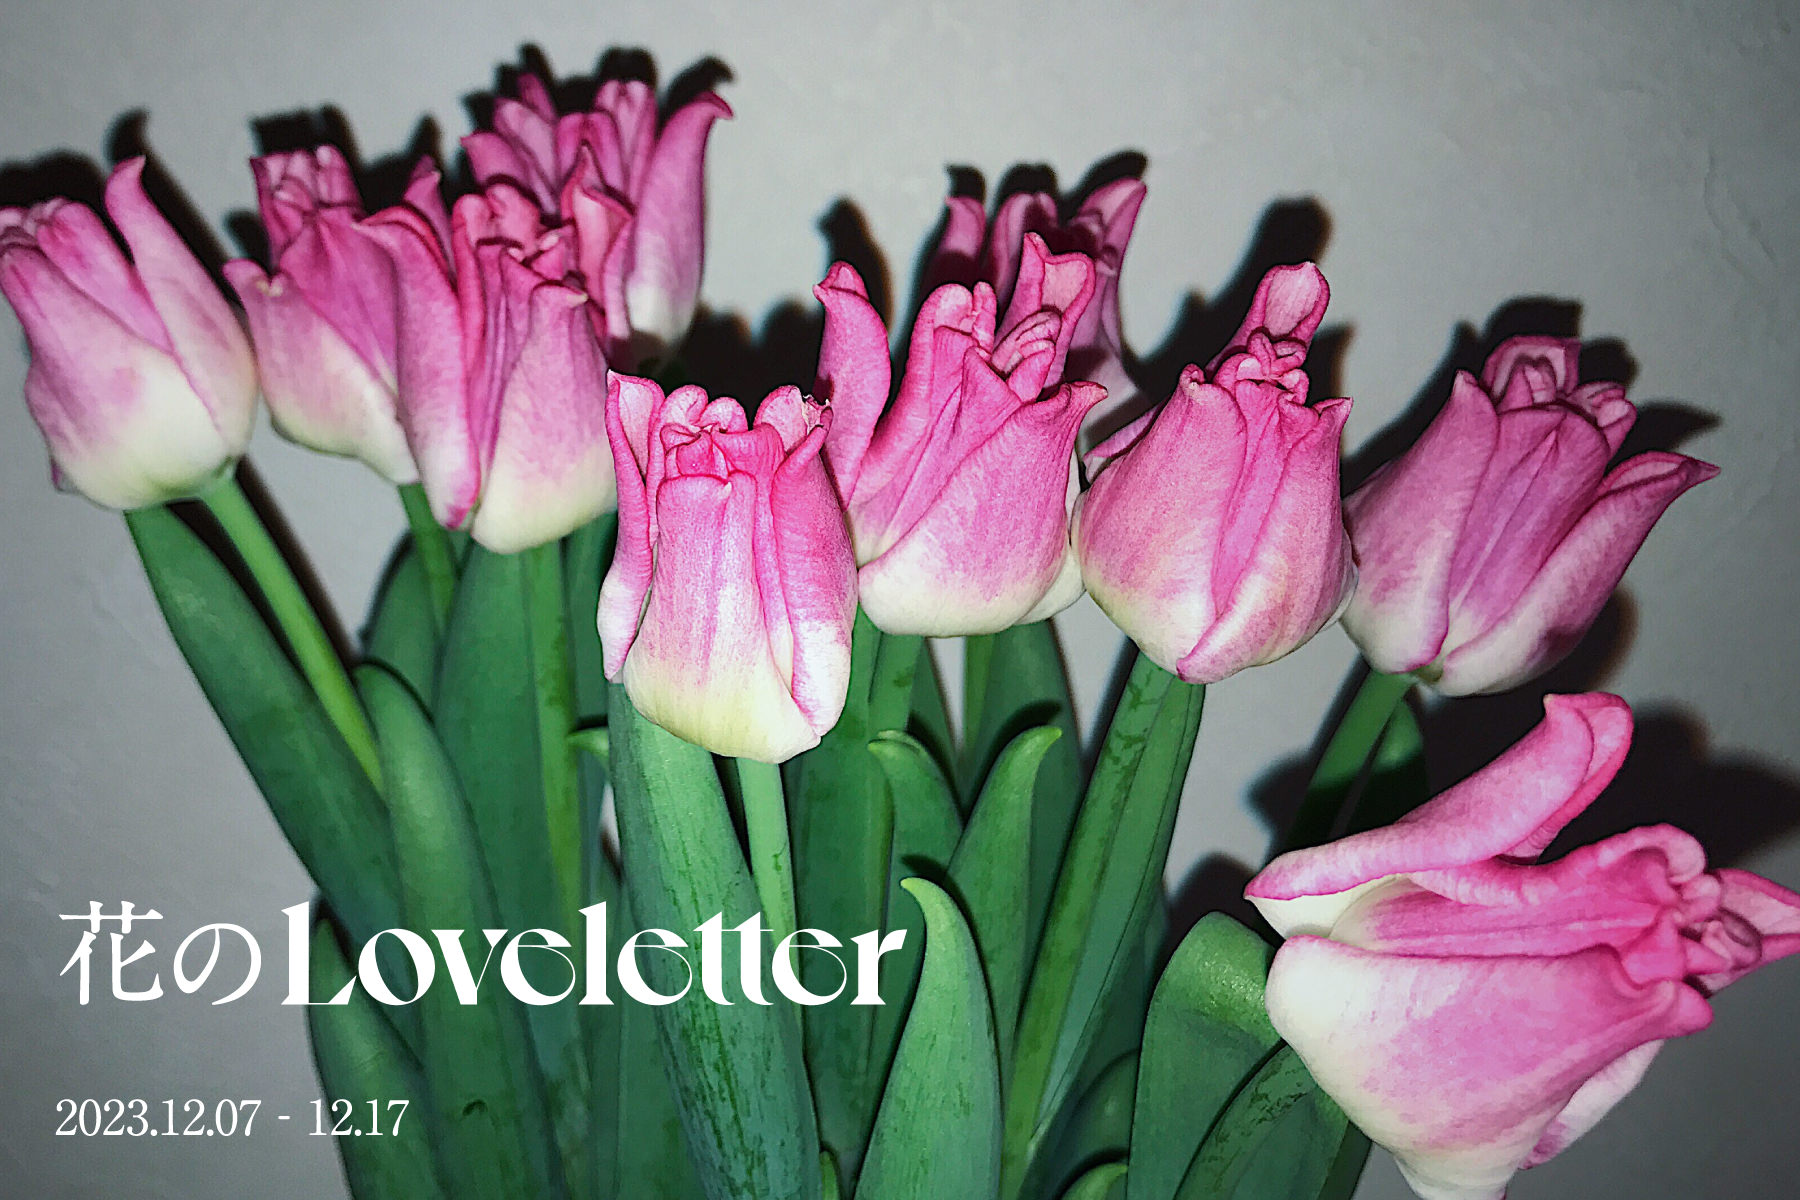 Flower Loveletter Announcement Visual